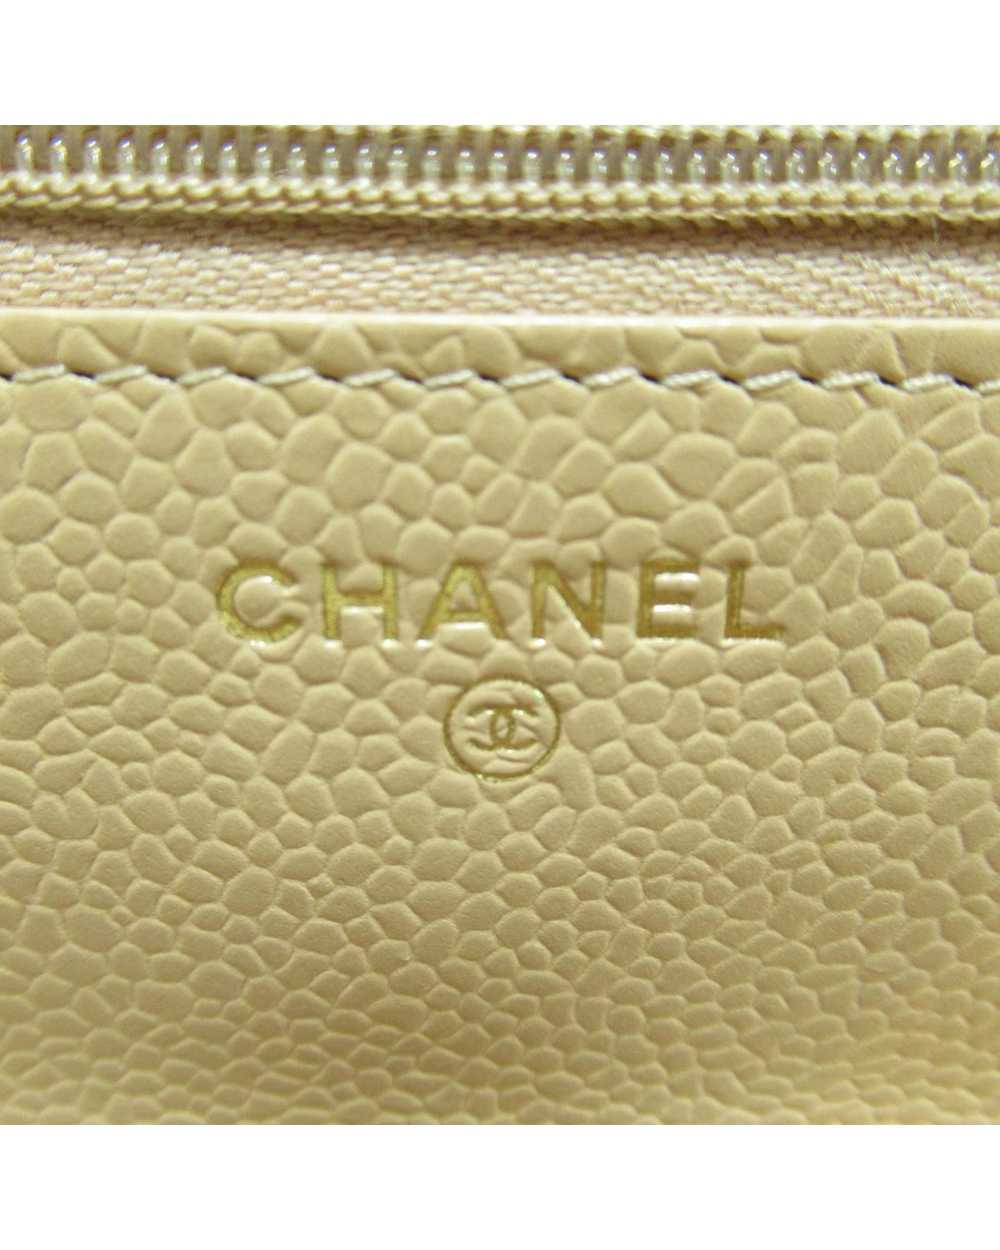 Chanel Beige Leather Shoulder Bag - image 9